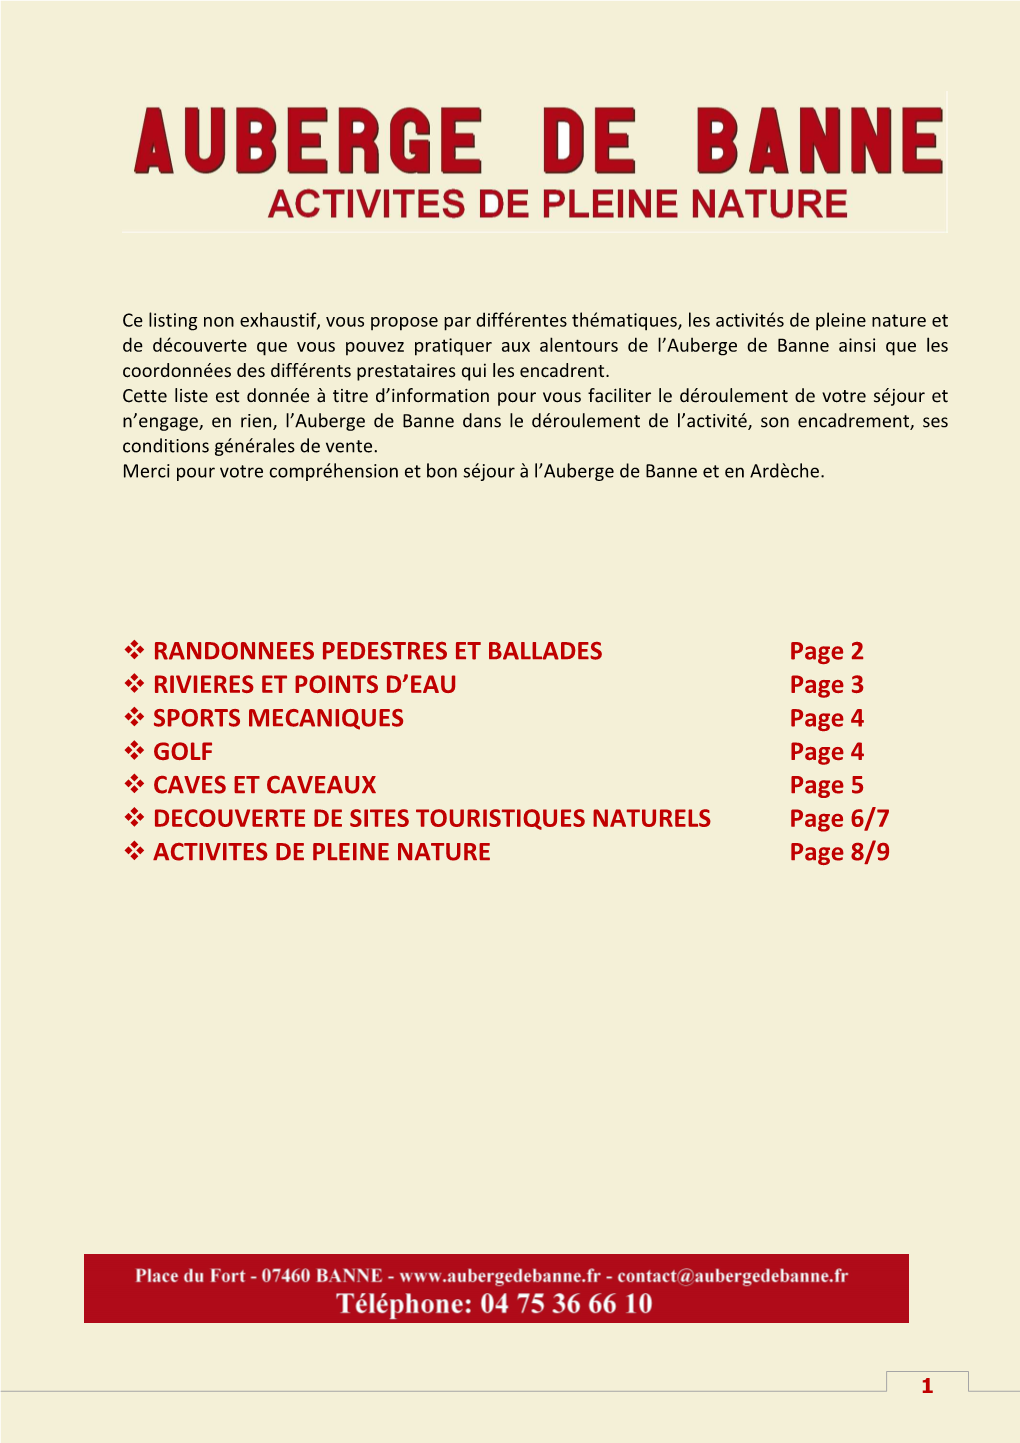 ACTIVITES DE PLEINE NATURE Page 8/9